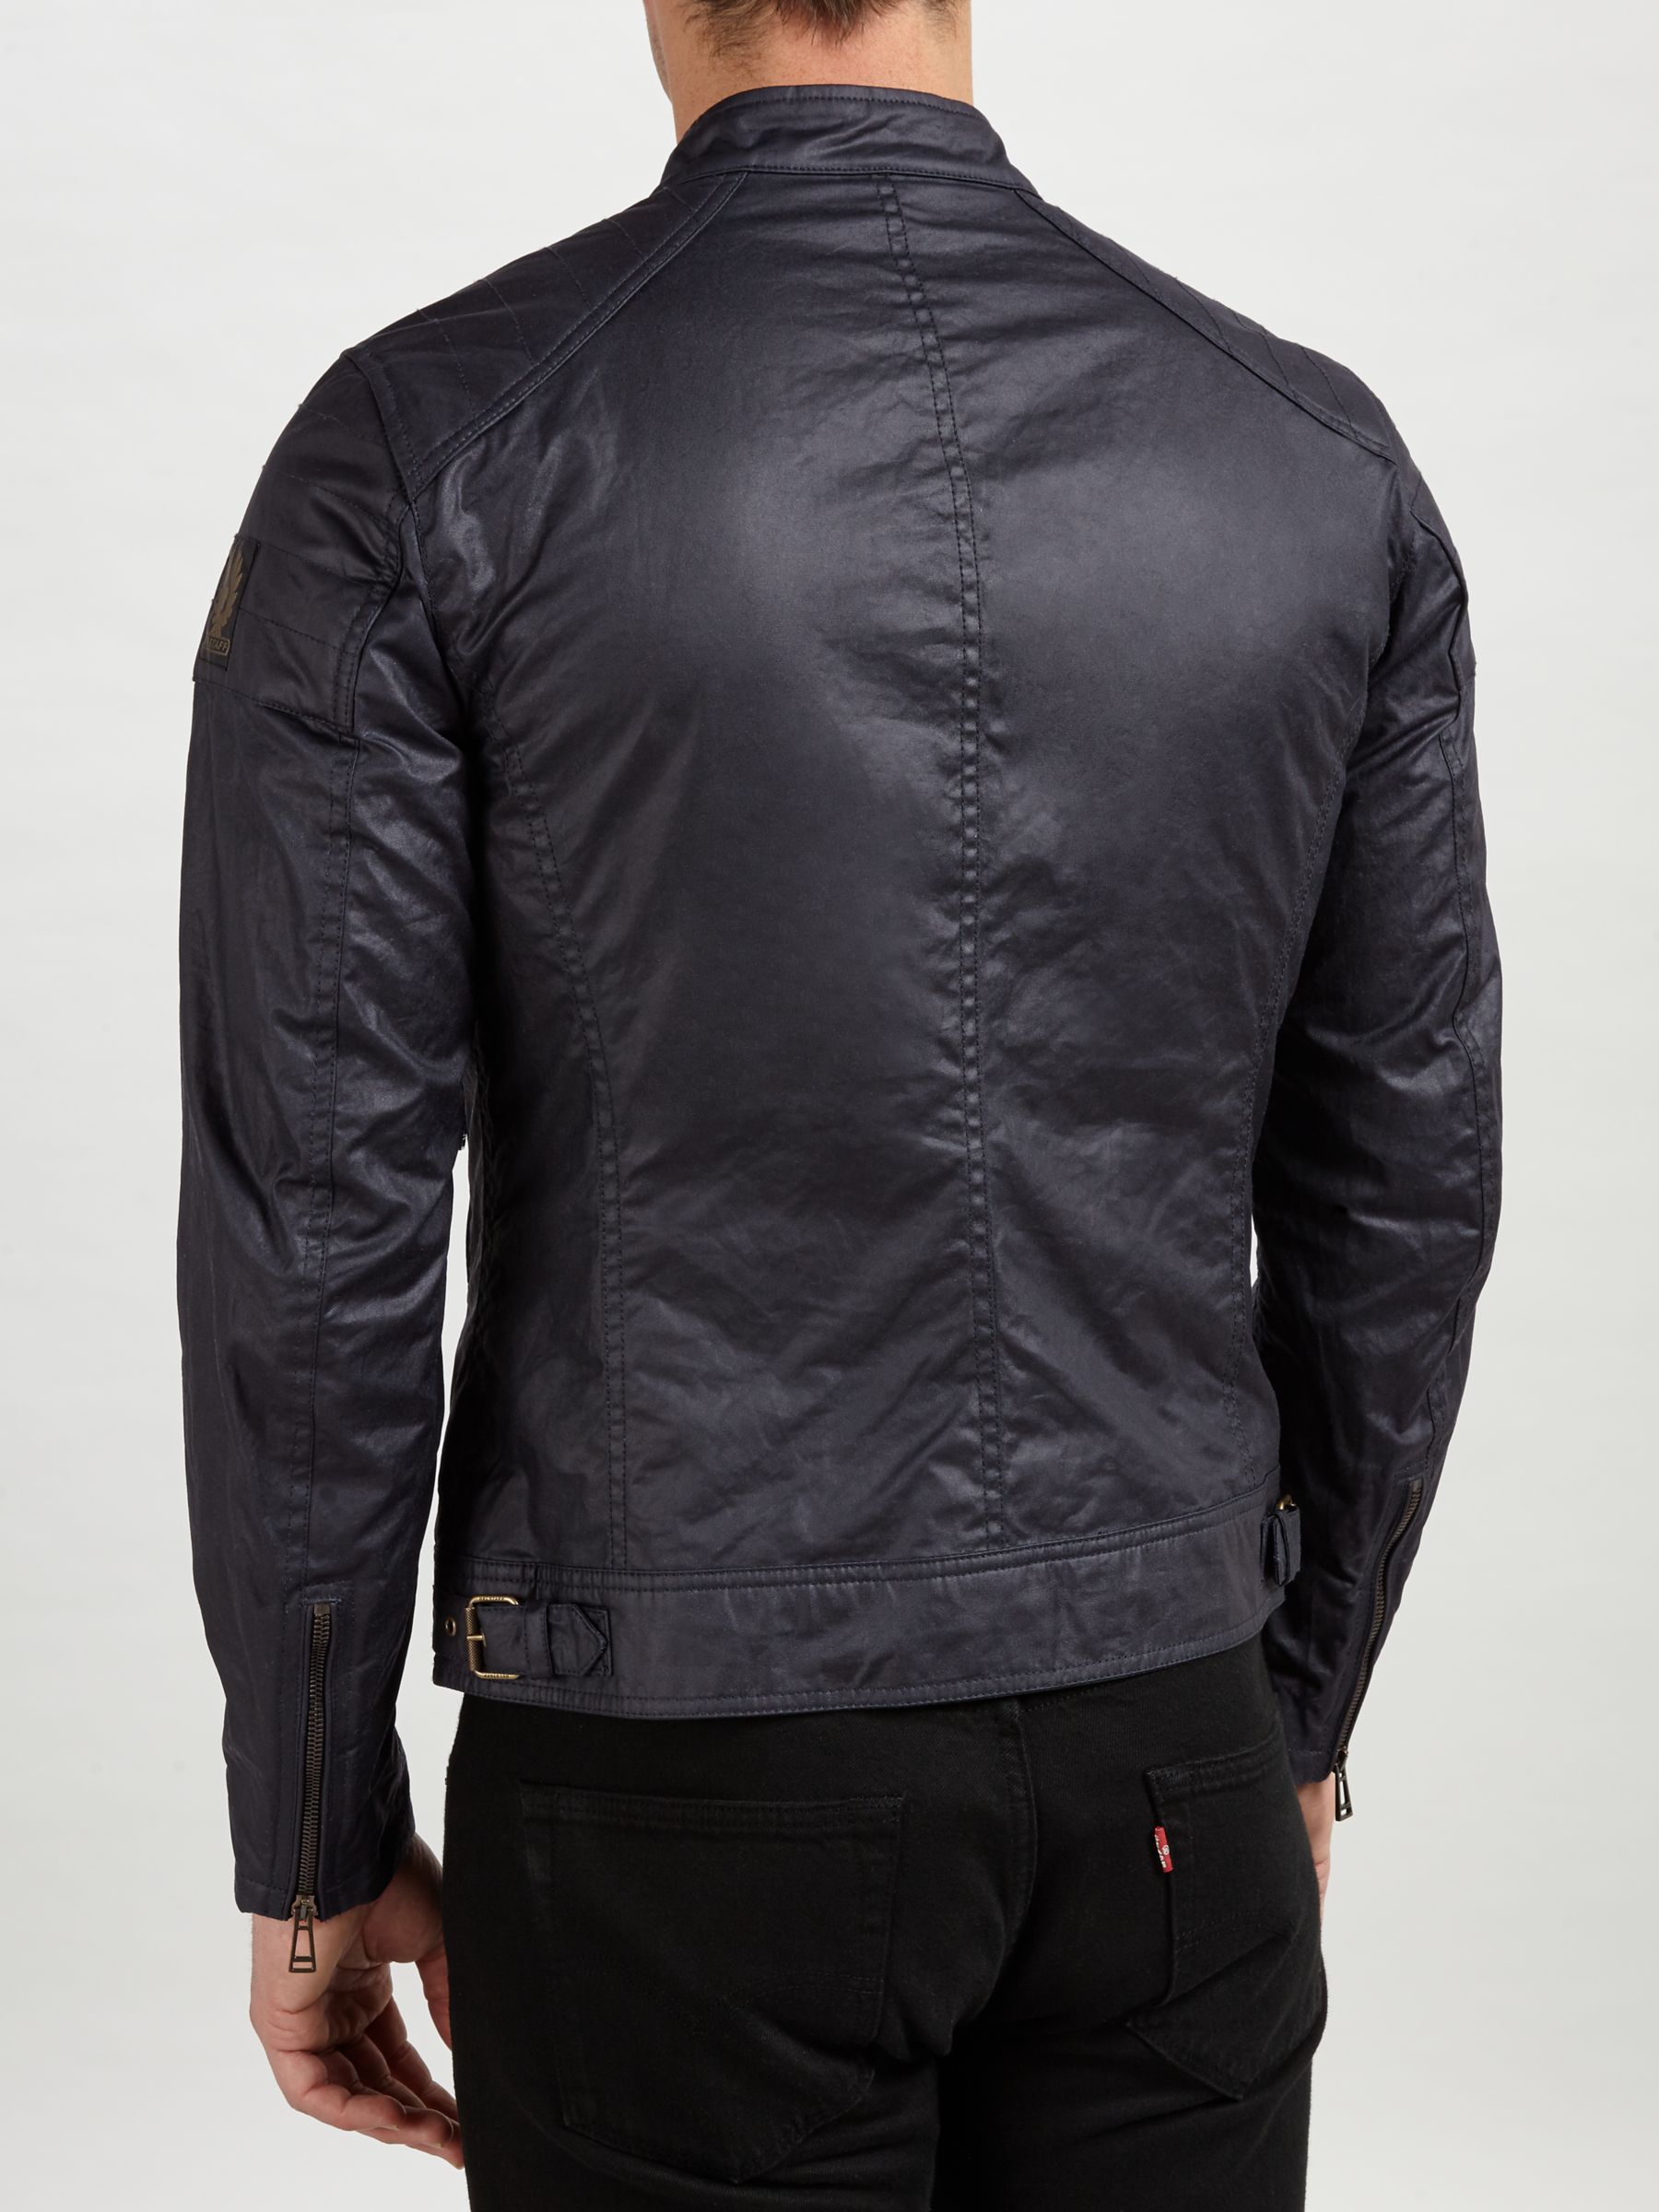 Belstaff Weybridge Wax Cotton Jacket, Dark Navy at John Lewis & Partners